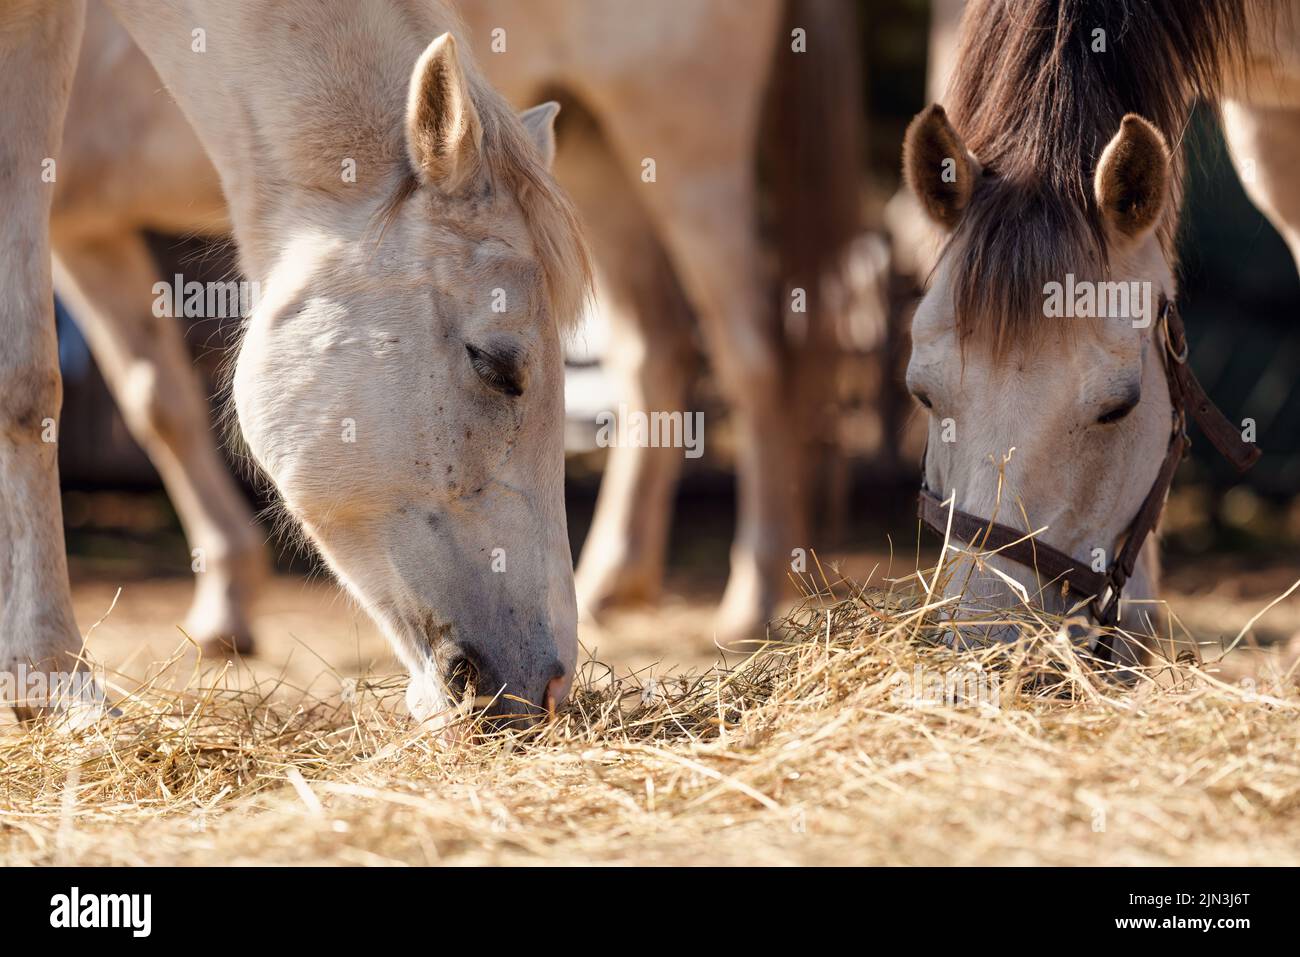 Deux chevaux blancs arabes mangeant du foin depuis le sol, gros plan sur la tête Banque D'Images